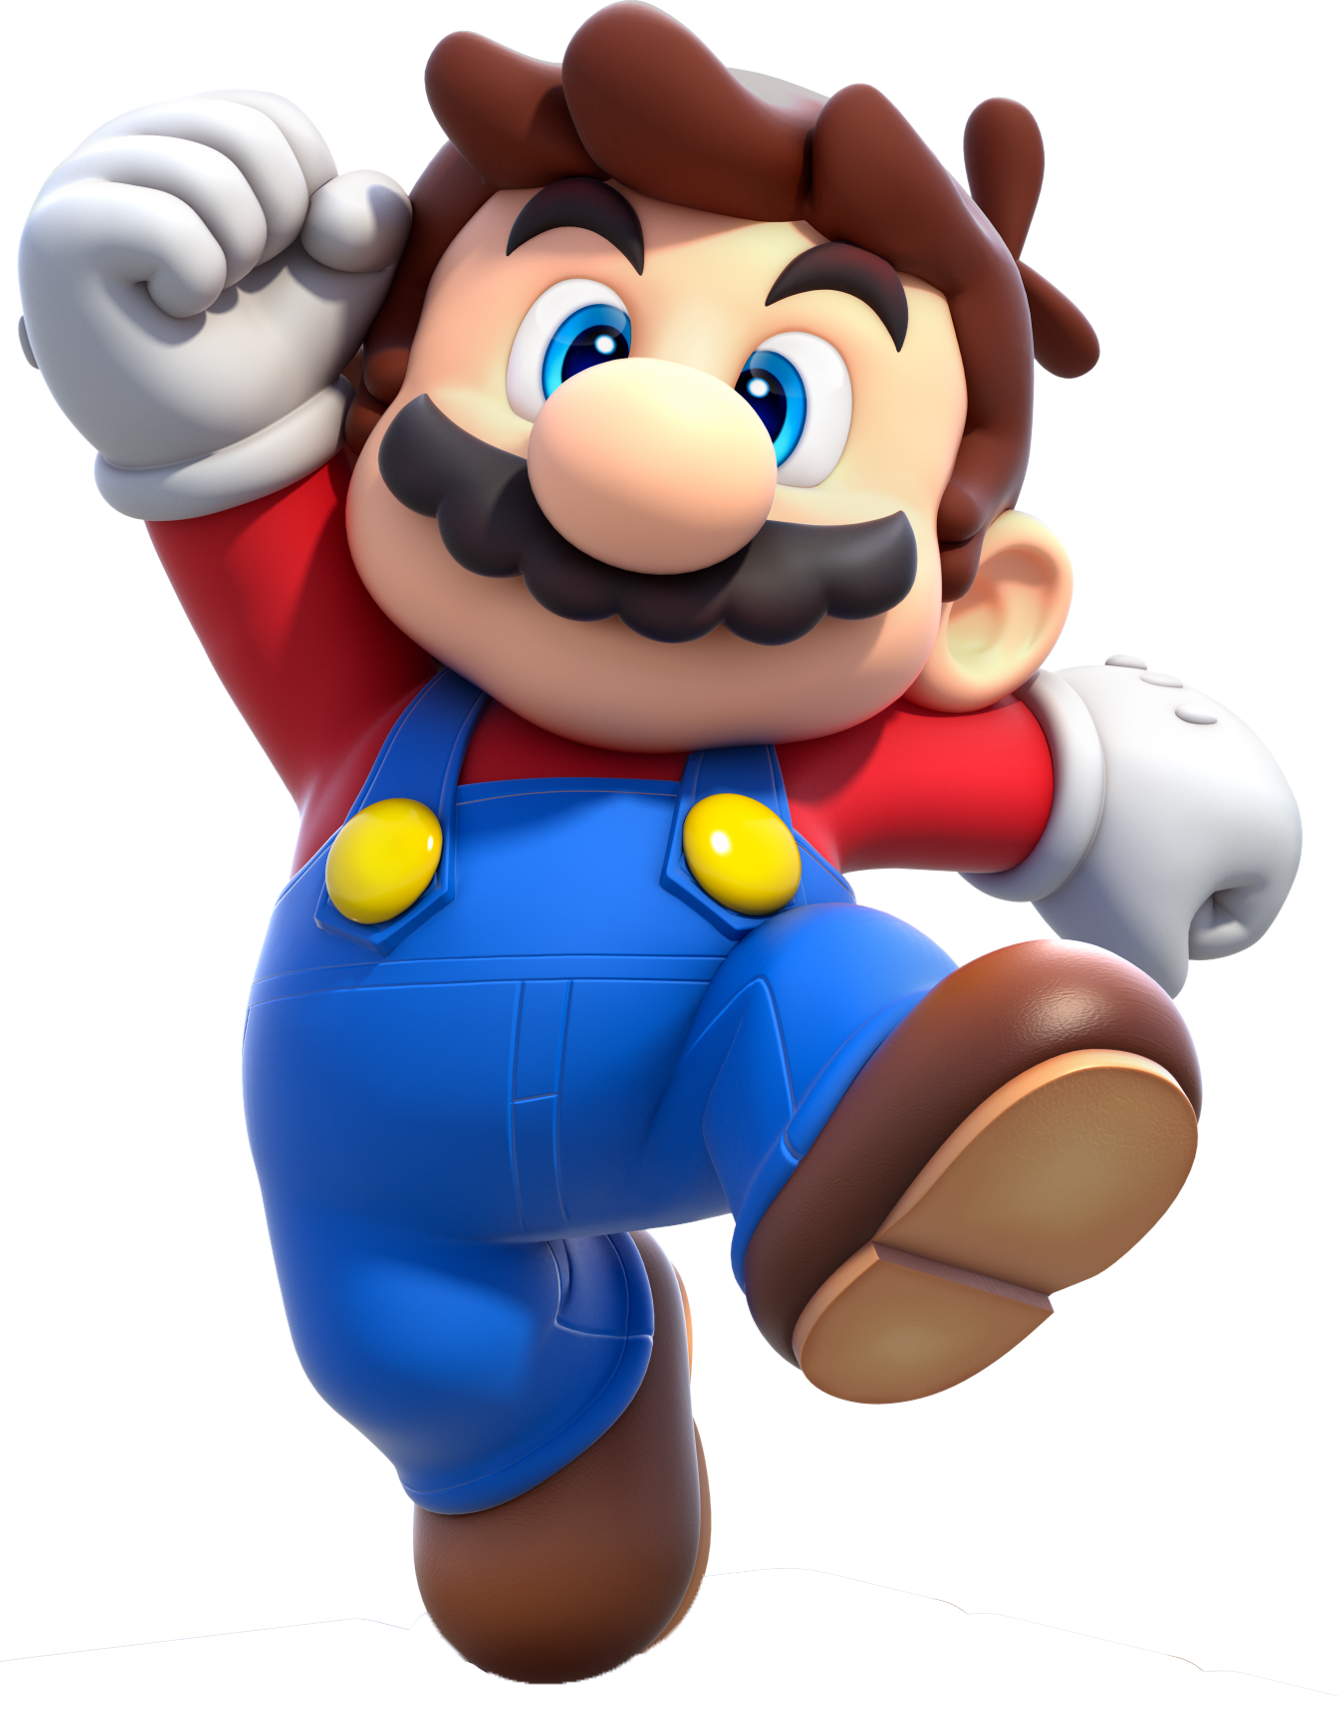 Small Mario - Super Mario Wiki, the Mario encyclopedia